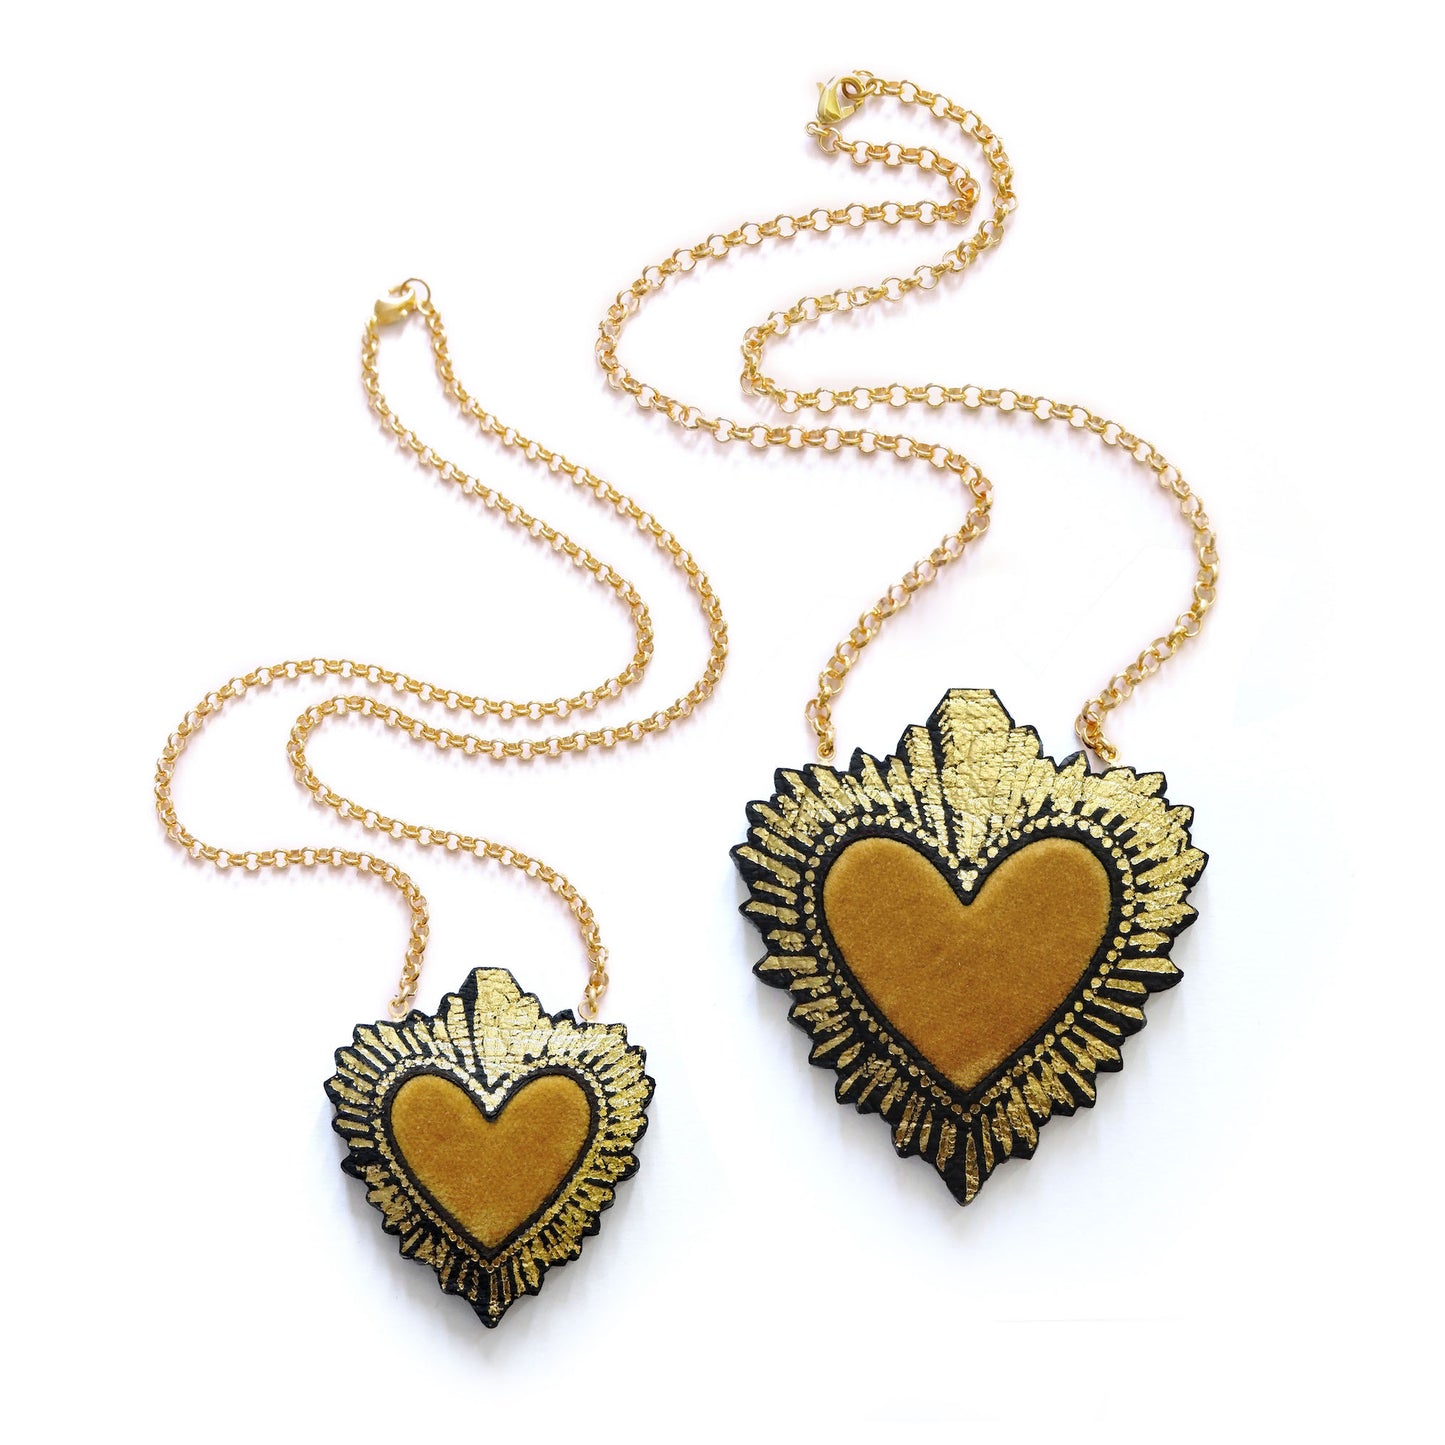 two sizes of ochre velvet sacred heart pendant necklace, on gold belcher chain